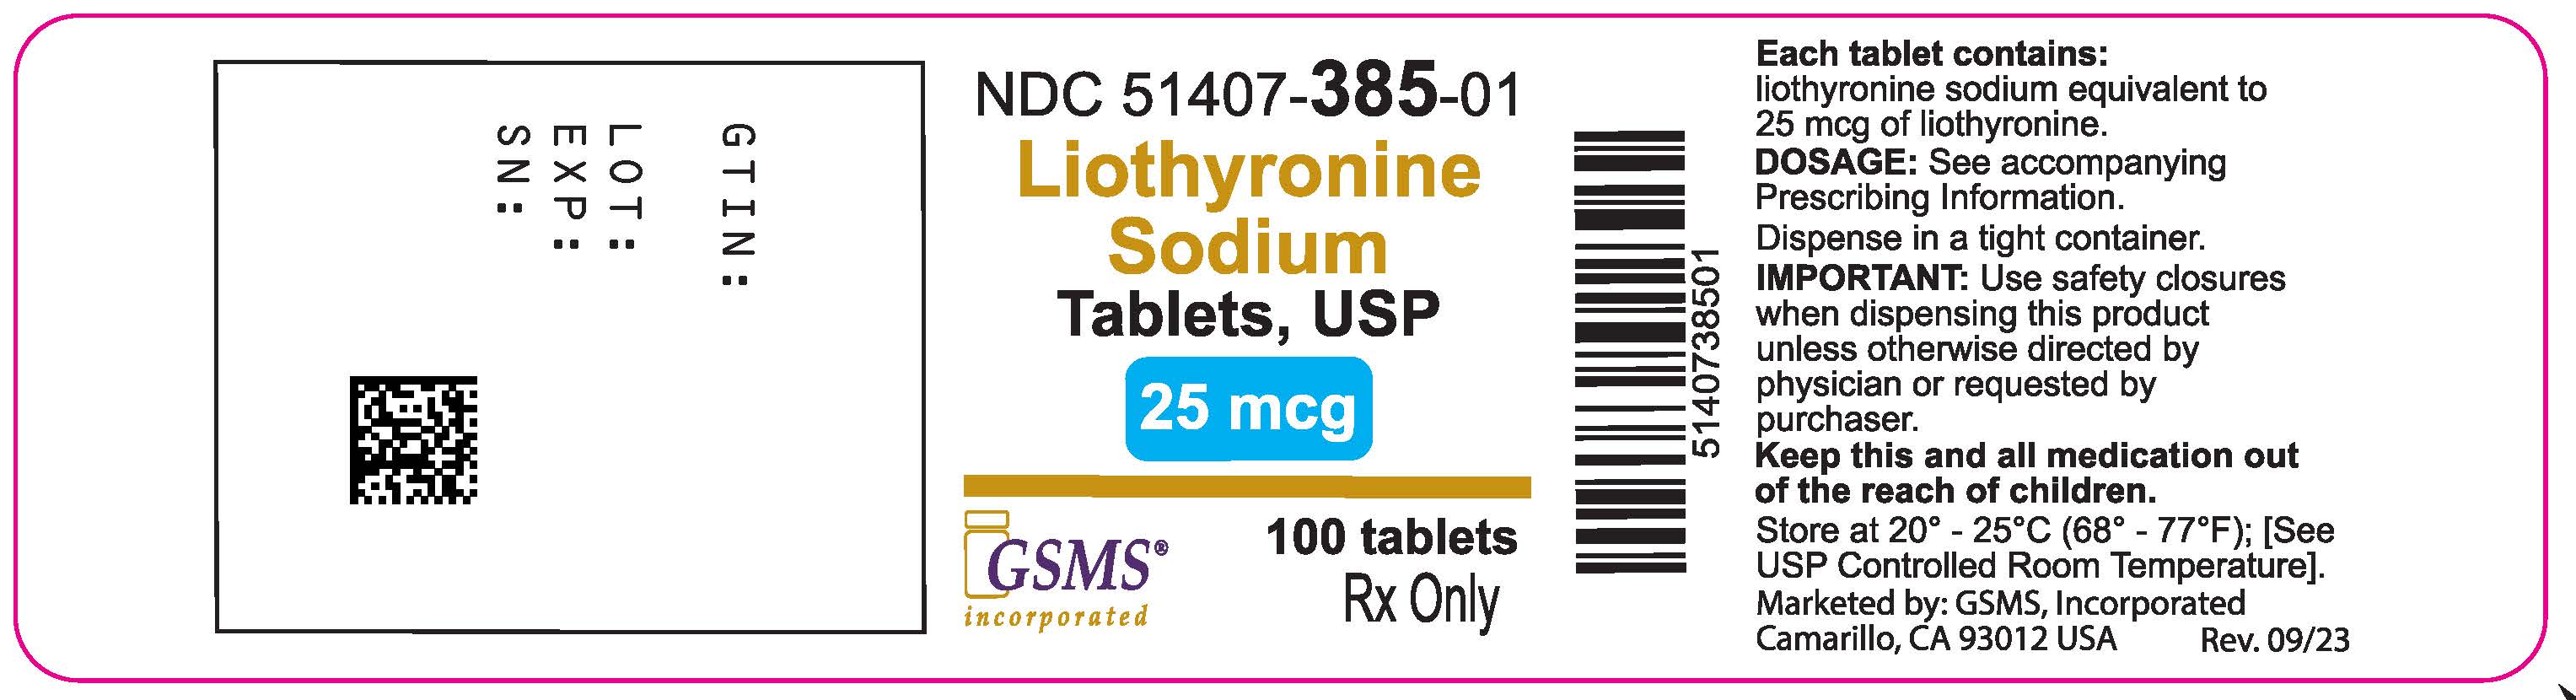 Liothyronine Soidum Tabs - 51407-385-01OL - Rev 0923.jpg